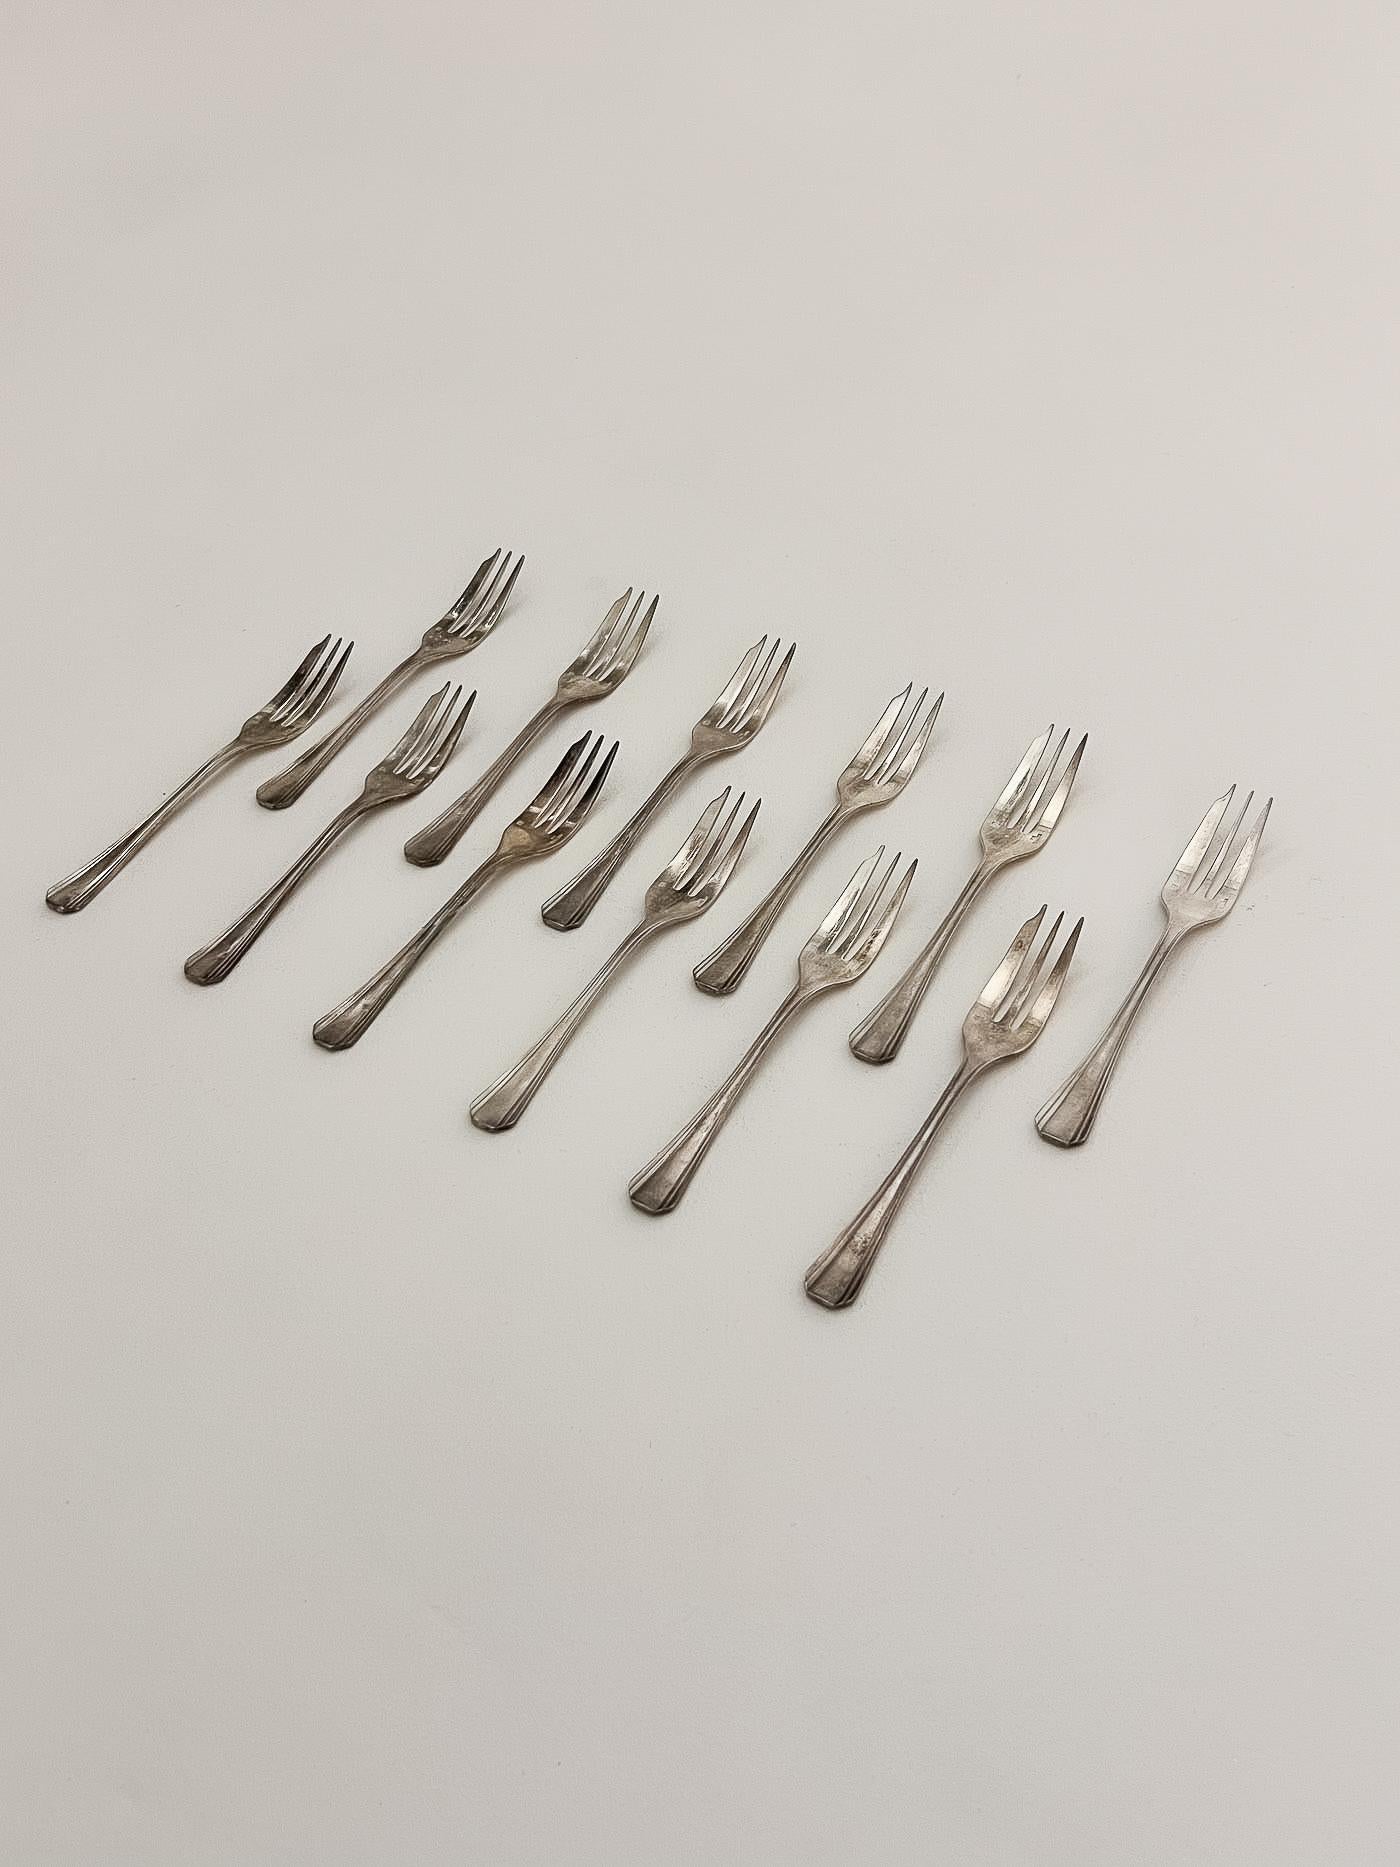 Set de douze fourchettes à huîtres en métal argenté de Christofle. Très bon état.
LP2155